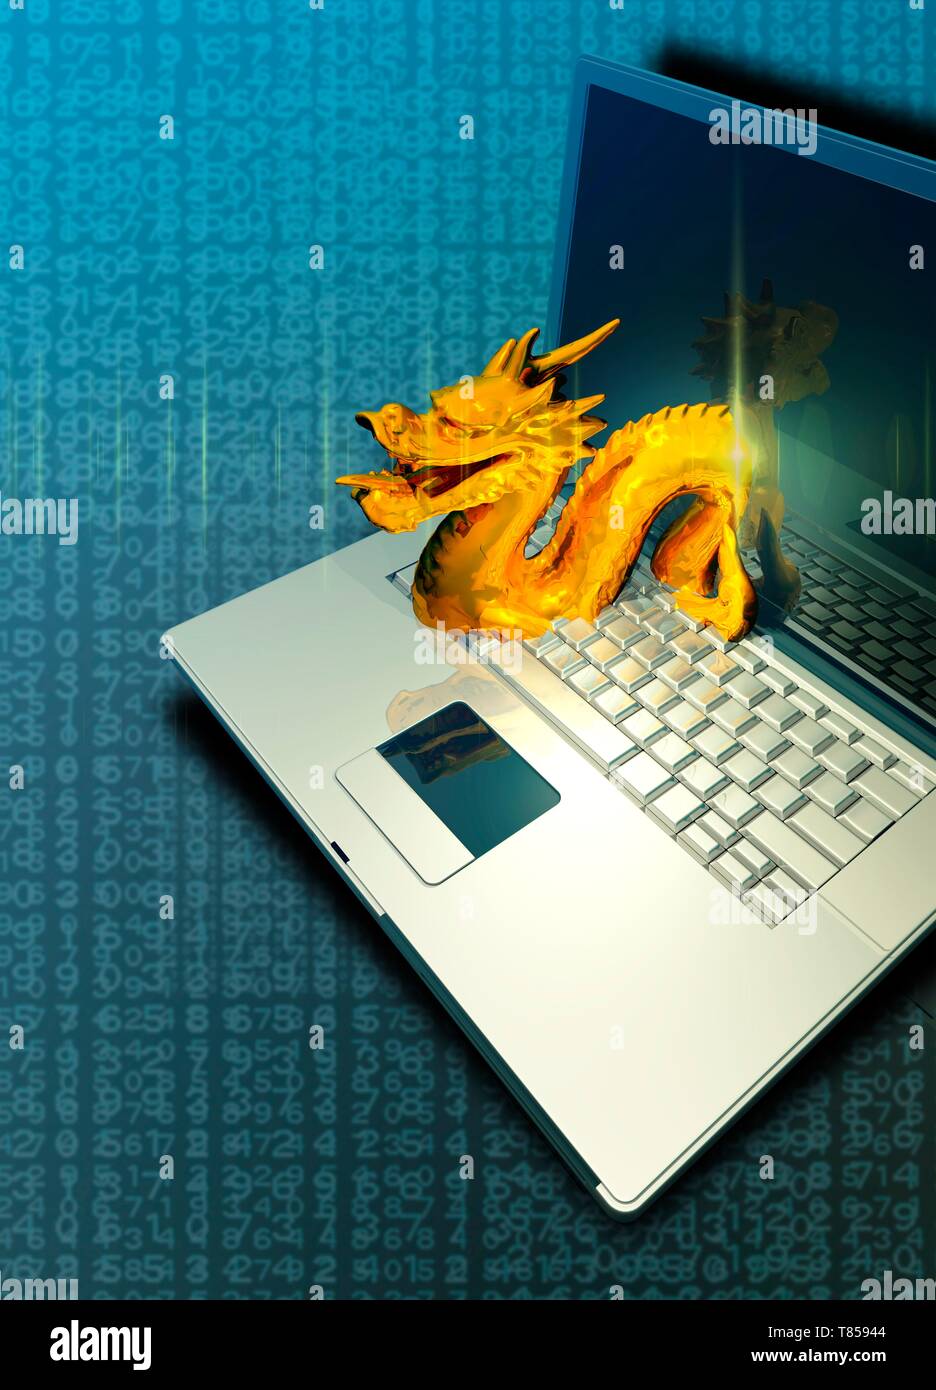 Chinesische computer Hacking, Abbildung Stockfoto